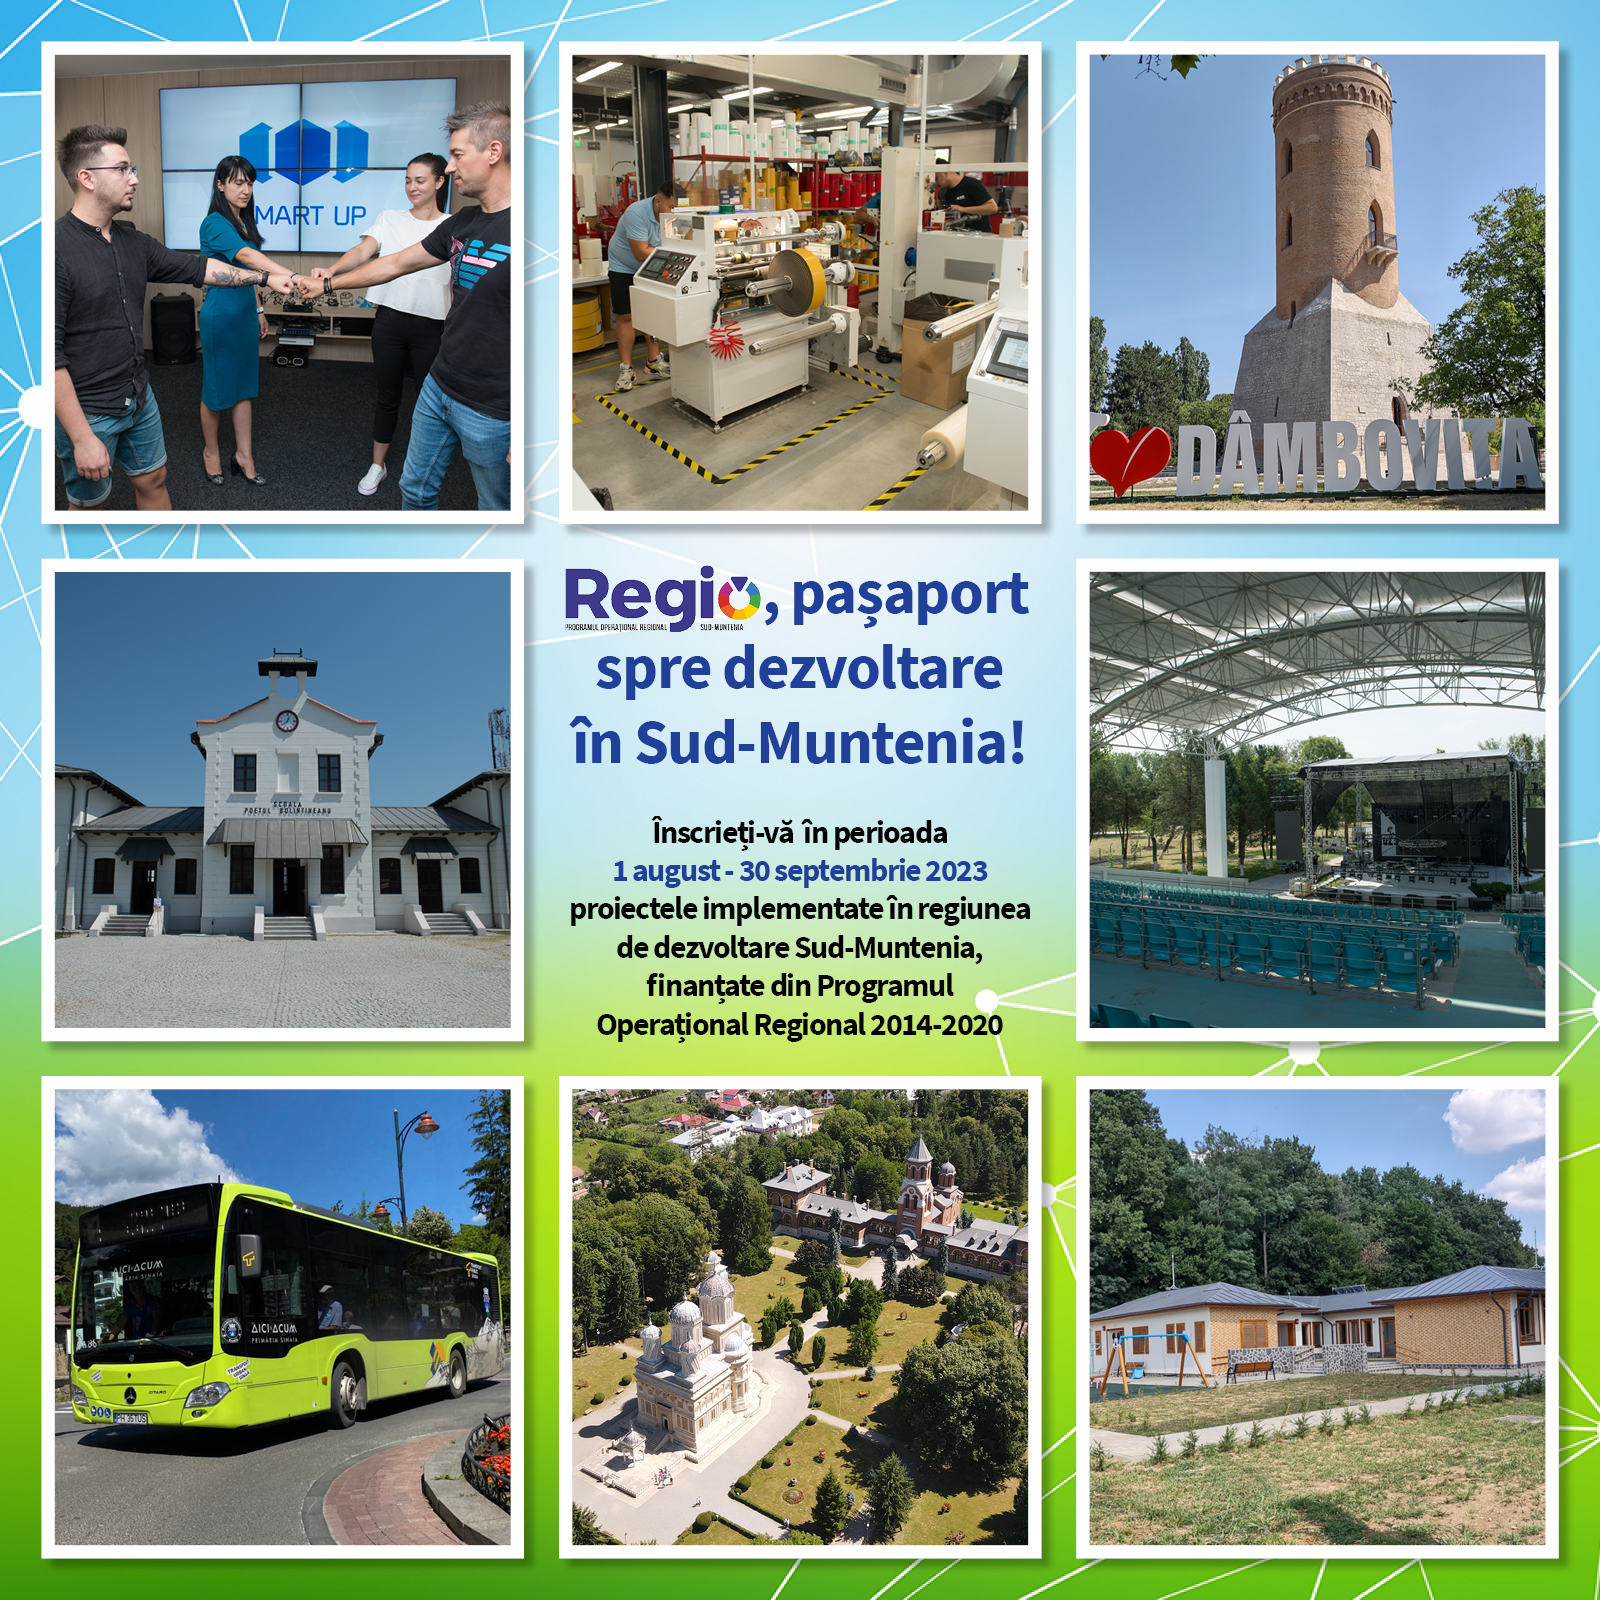 Au mai rămas 25 de zile pentru înscrierea la concursul „Regio, pașaport spre dezvoltare în Sud-Muntenia!”